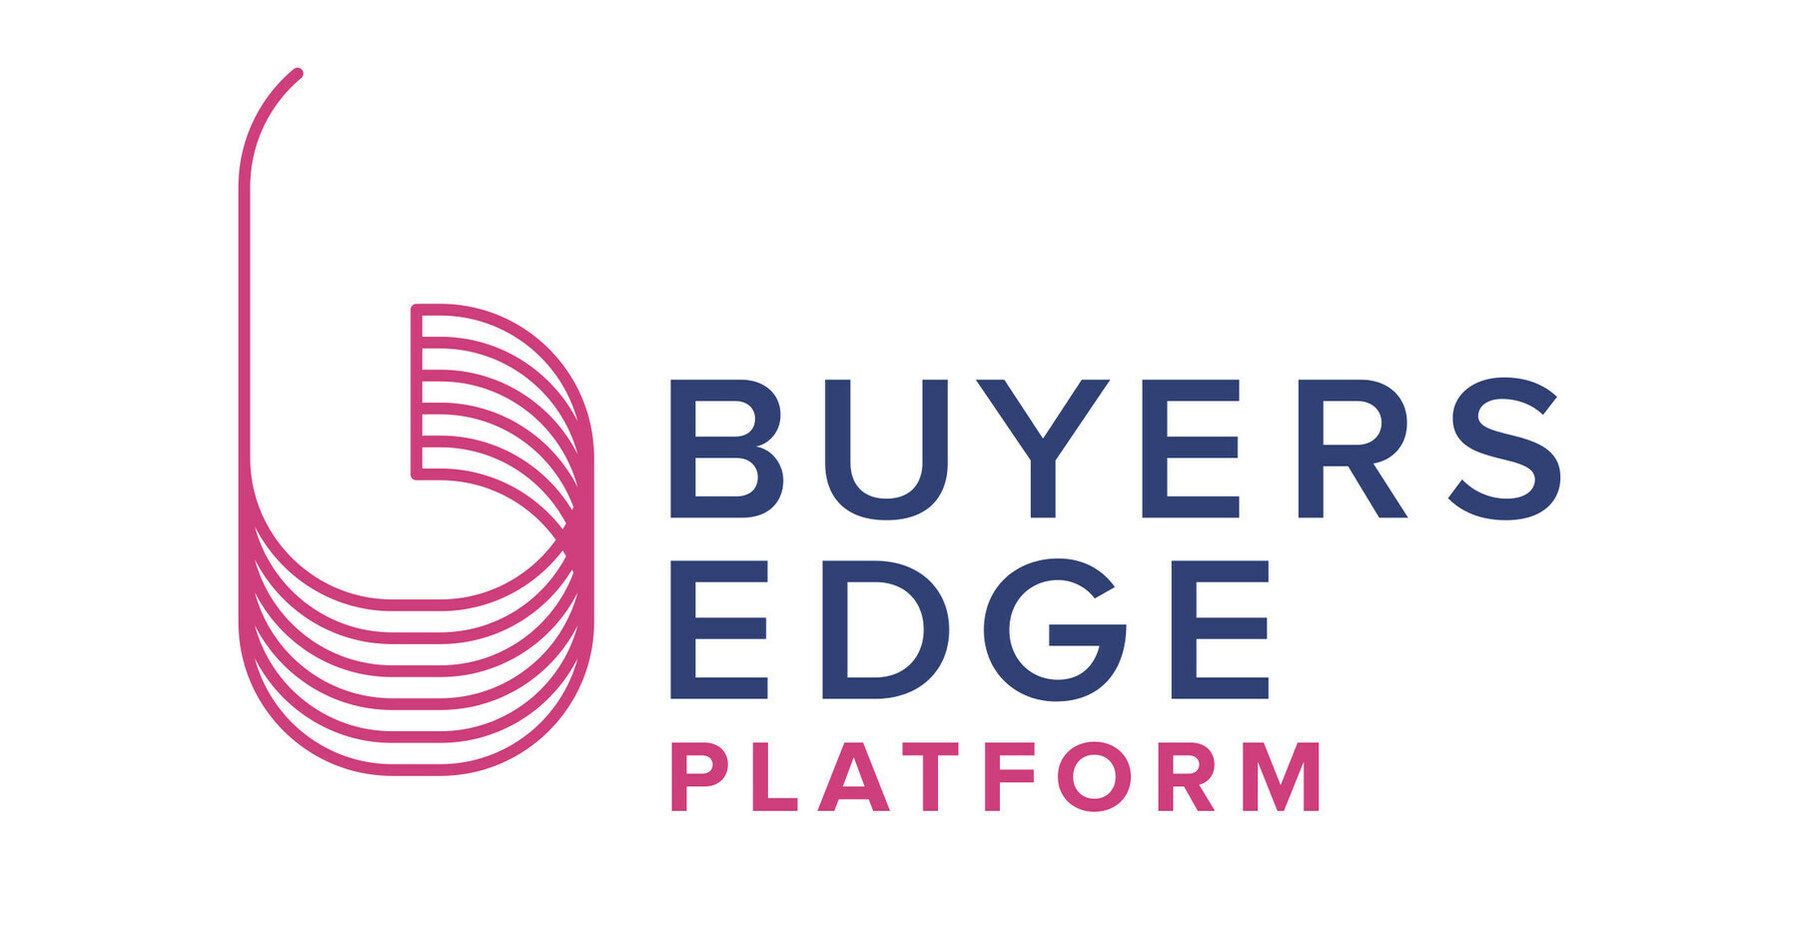 Buyers Edge平台完成11亿美元的资本重组，以加速下一阶段的增长